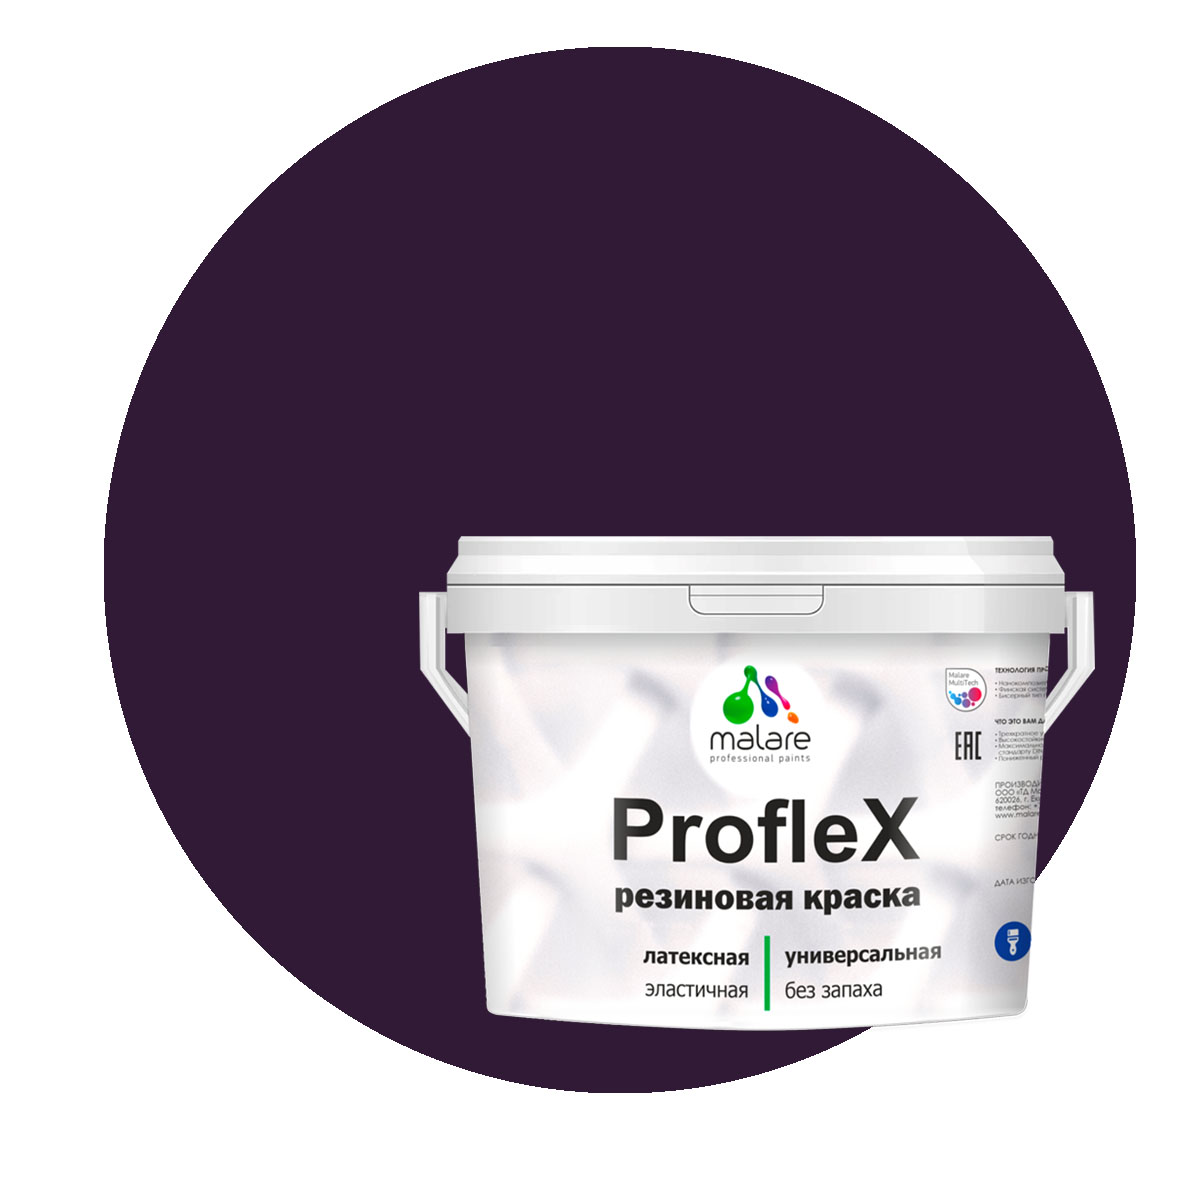 Краска Malare ProfleX для фасадов, интерьера, мебели, черничные ночи, 10 кг. щелочной очиститель фасадов зданий plex